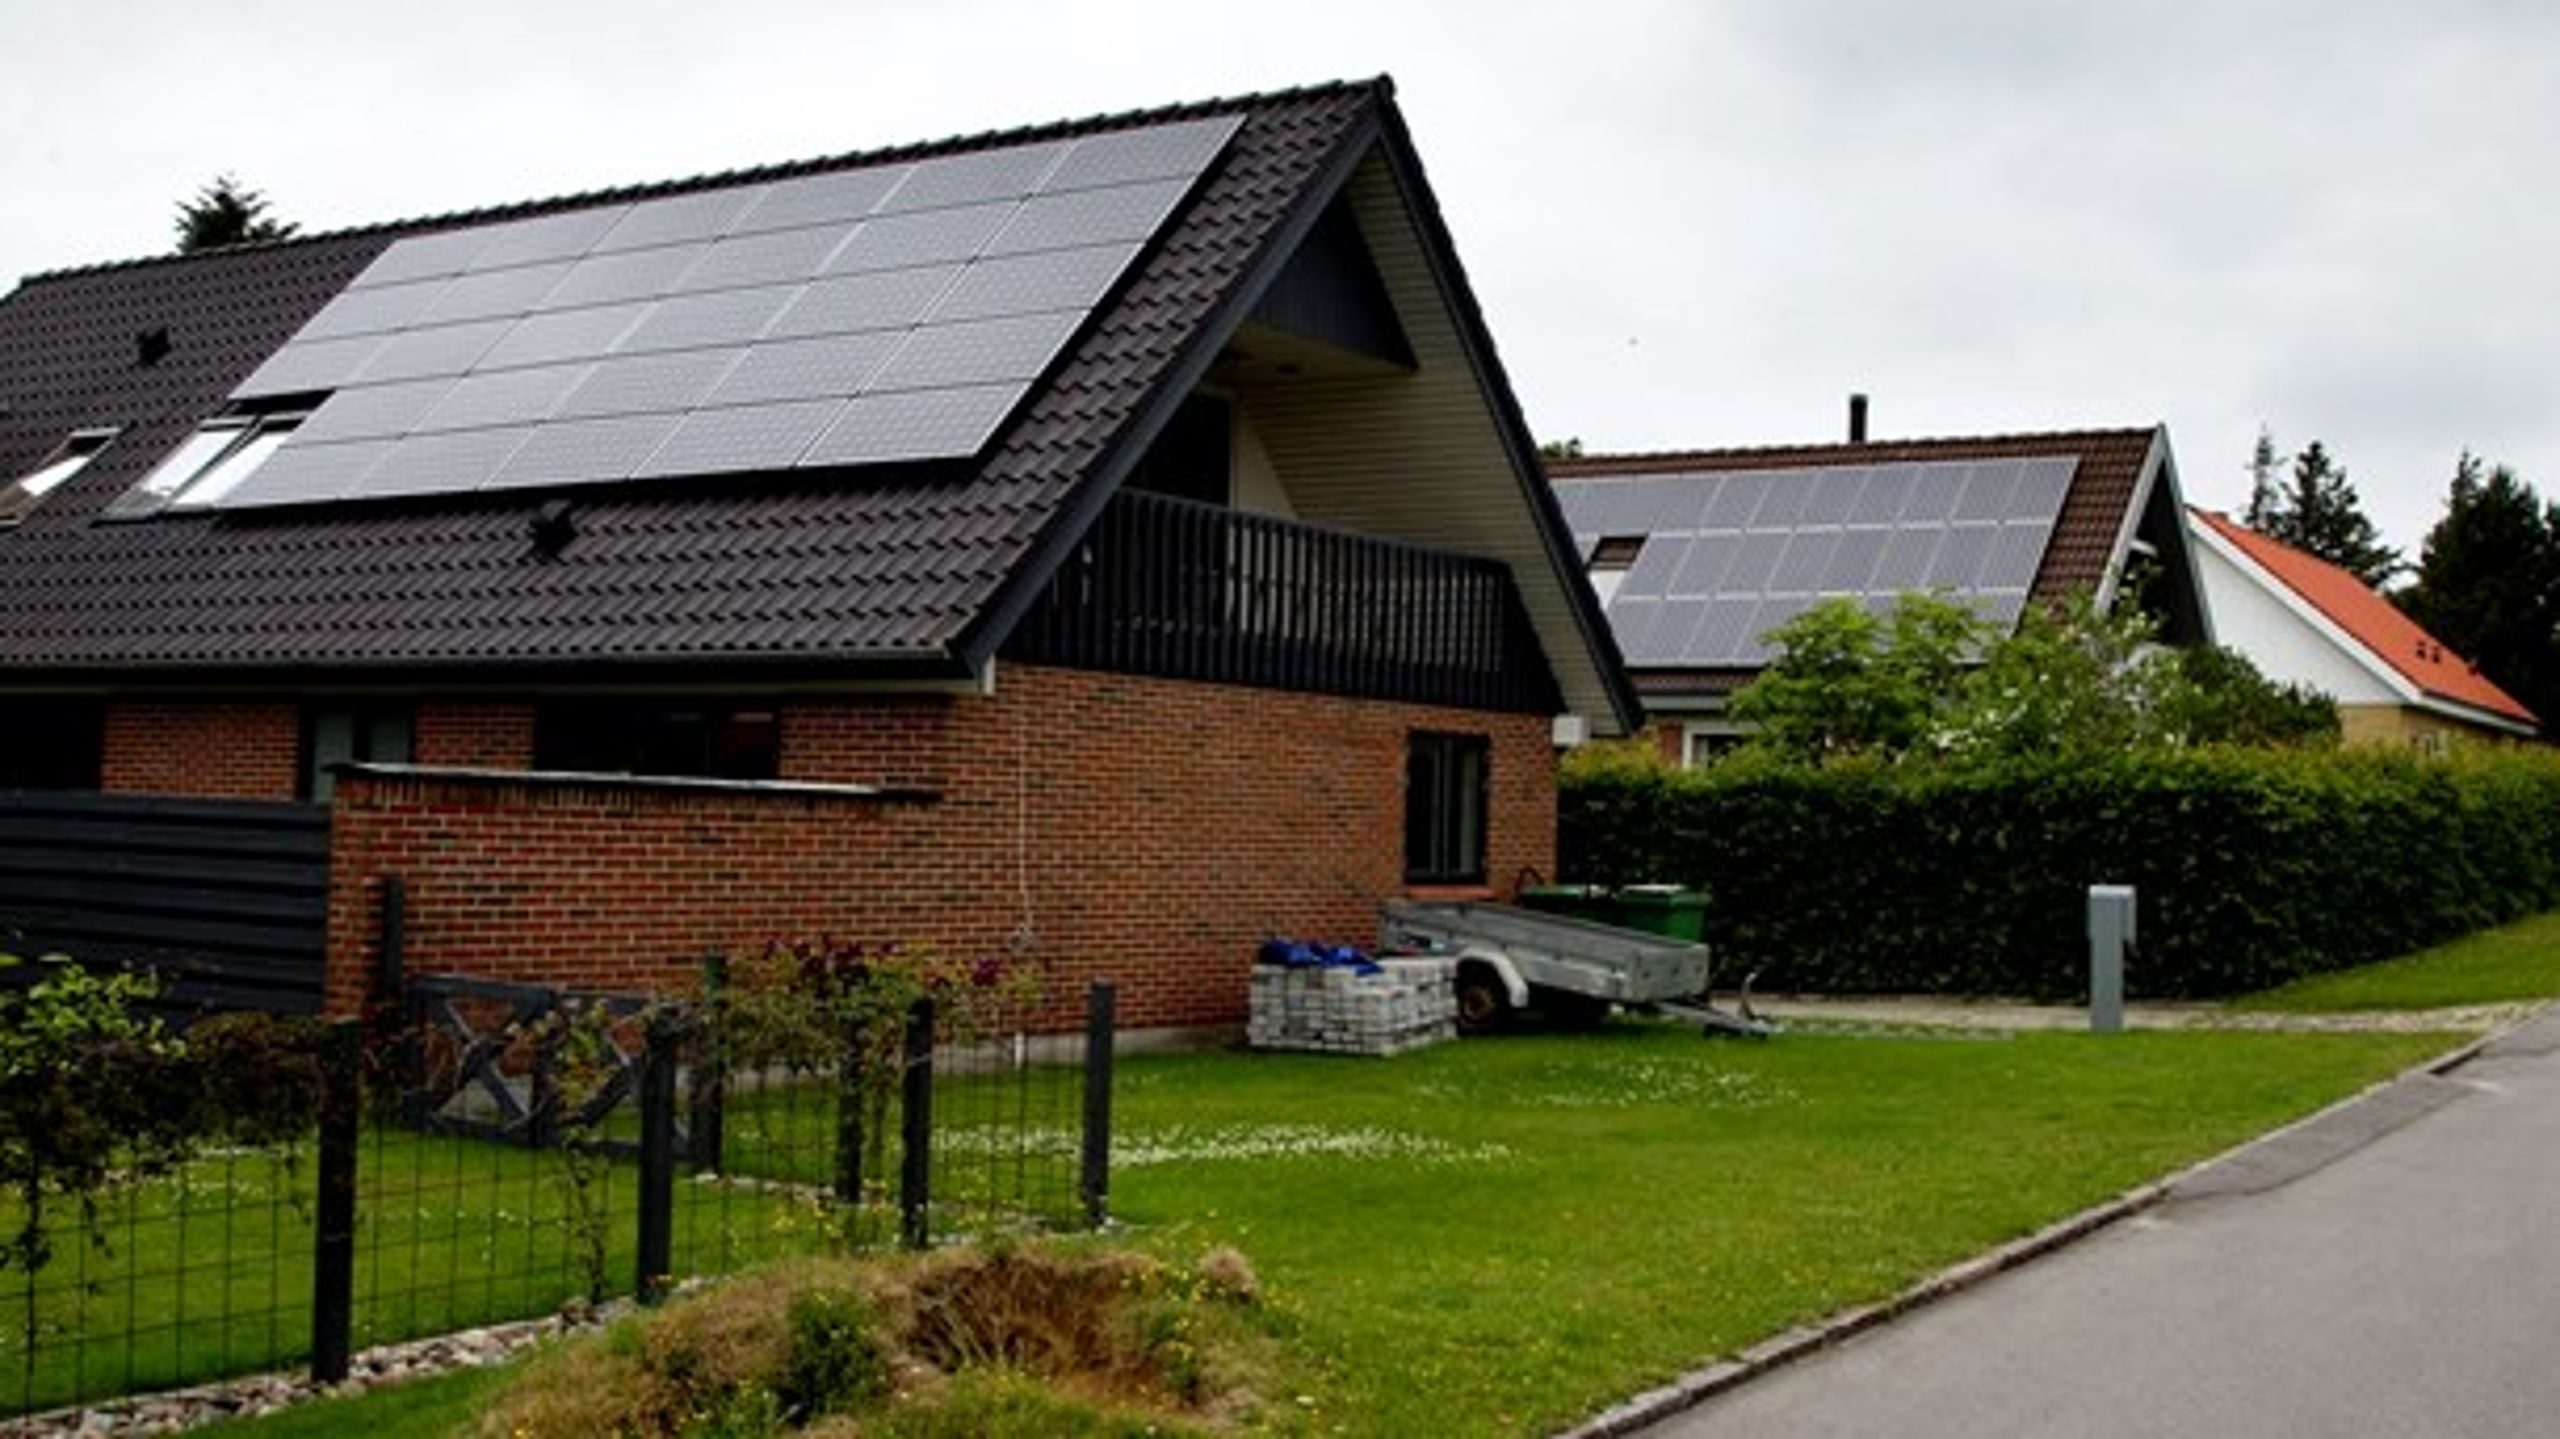 40 procent af al strøm, der produceres i Danmark bliver brugt i bygninger. Derfor kan energieffektiviseringer gøre den grønne omstilling billigere, skriver&nbsp;Gunde Odgaard og Michael H. Nielsen.